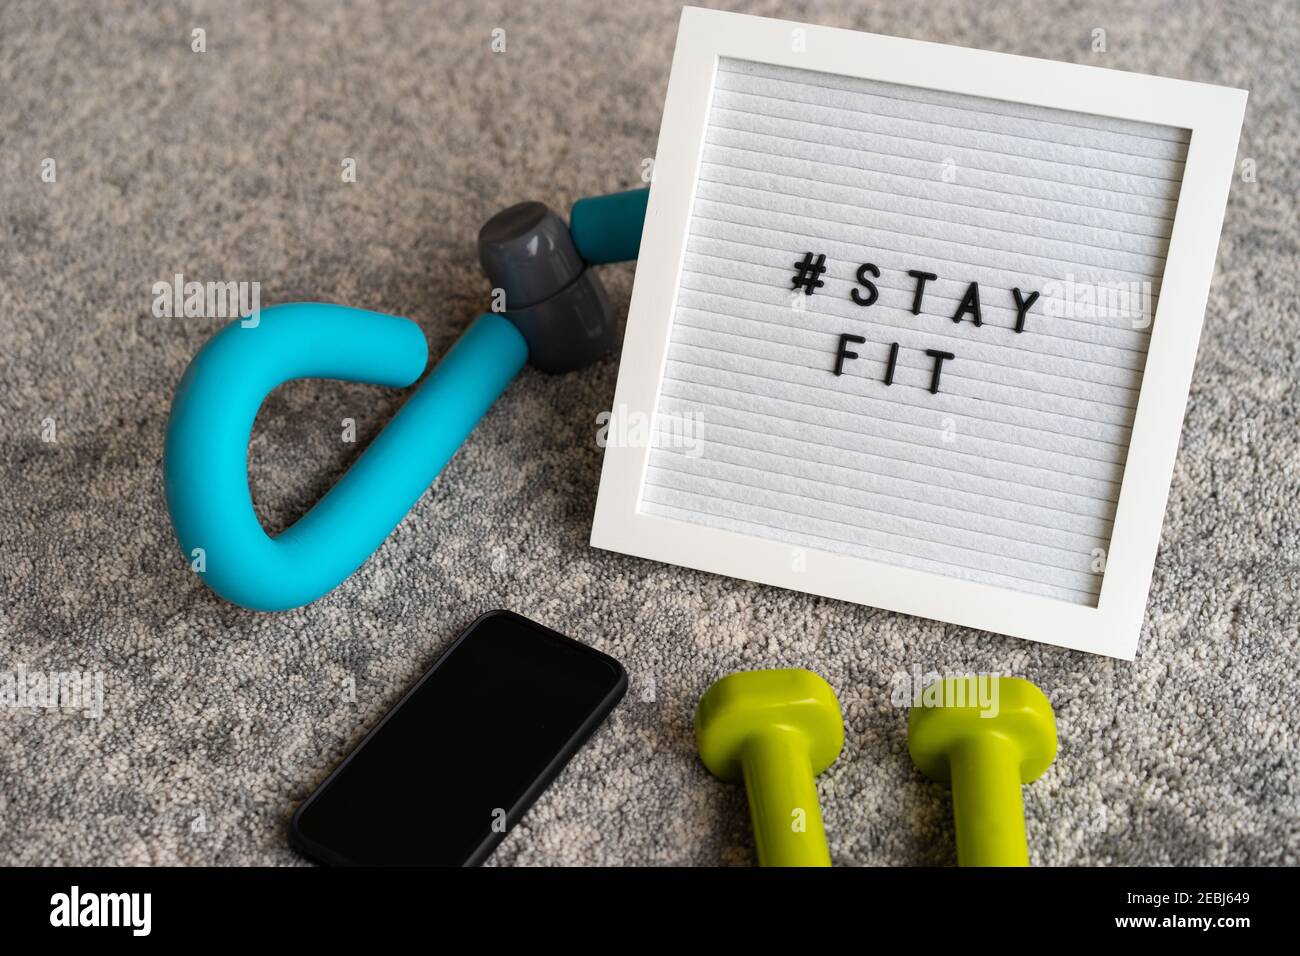 Message viral sur les réseaux sociaux « TAY FIT ». Exercice physique à la maison pendant le coronavirus COVID-19. Banque D'Images